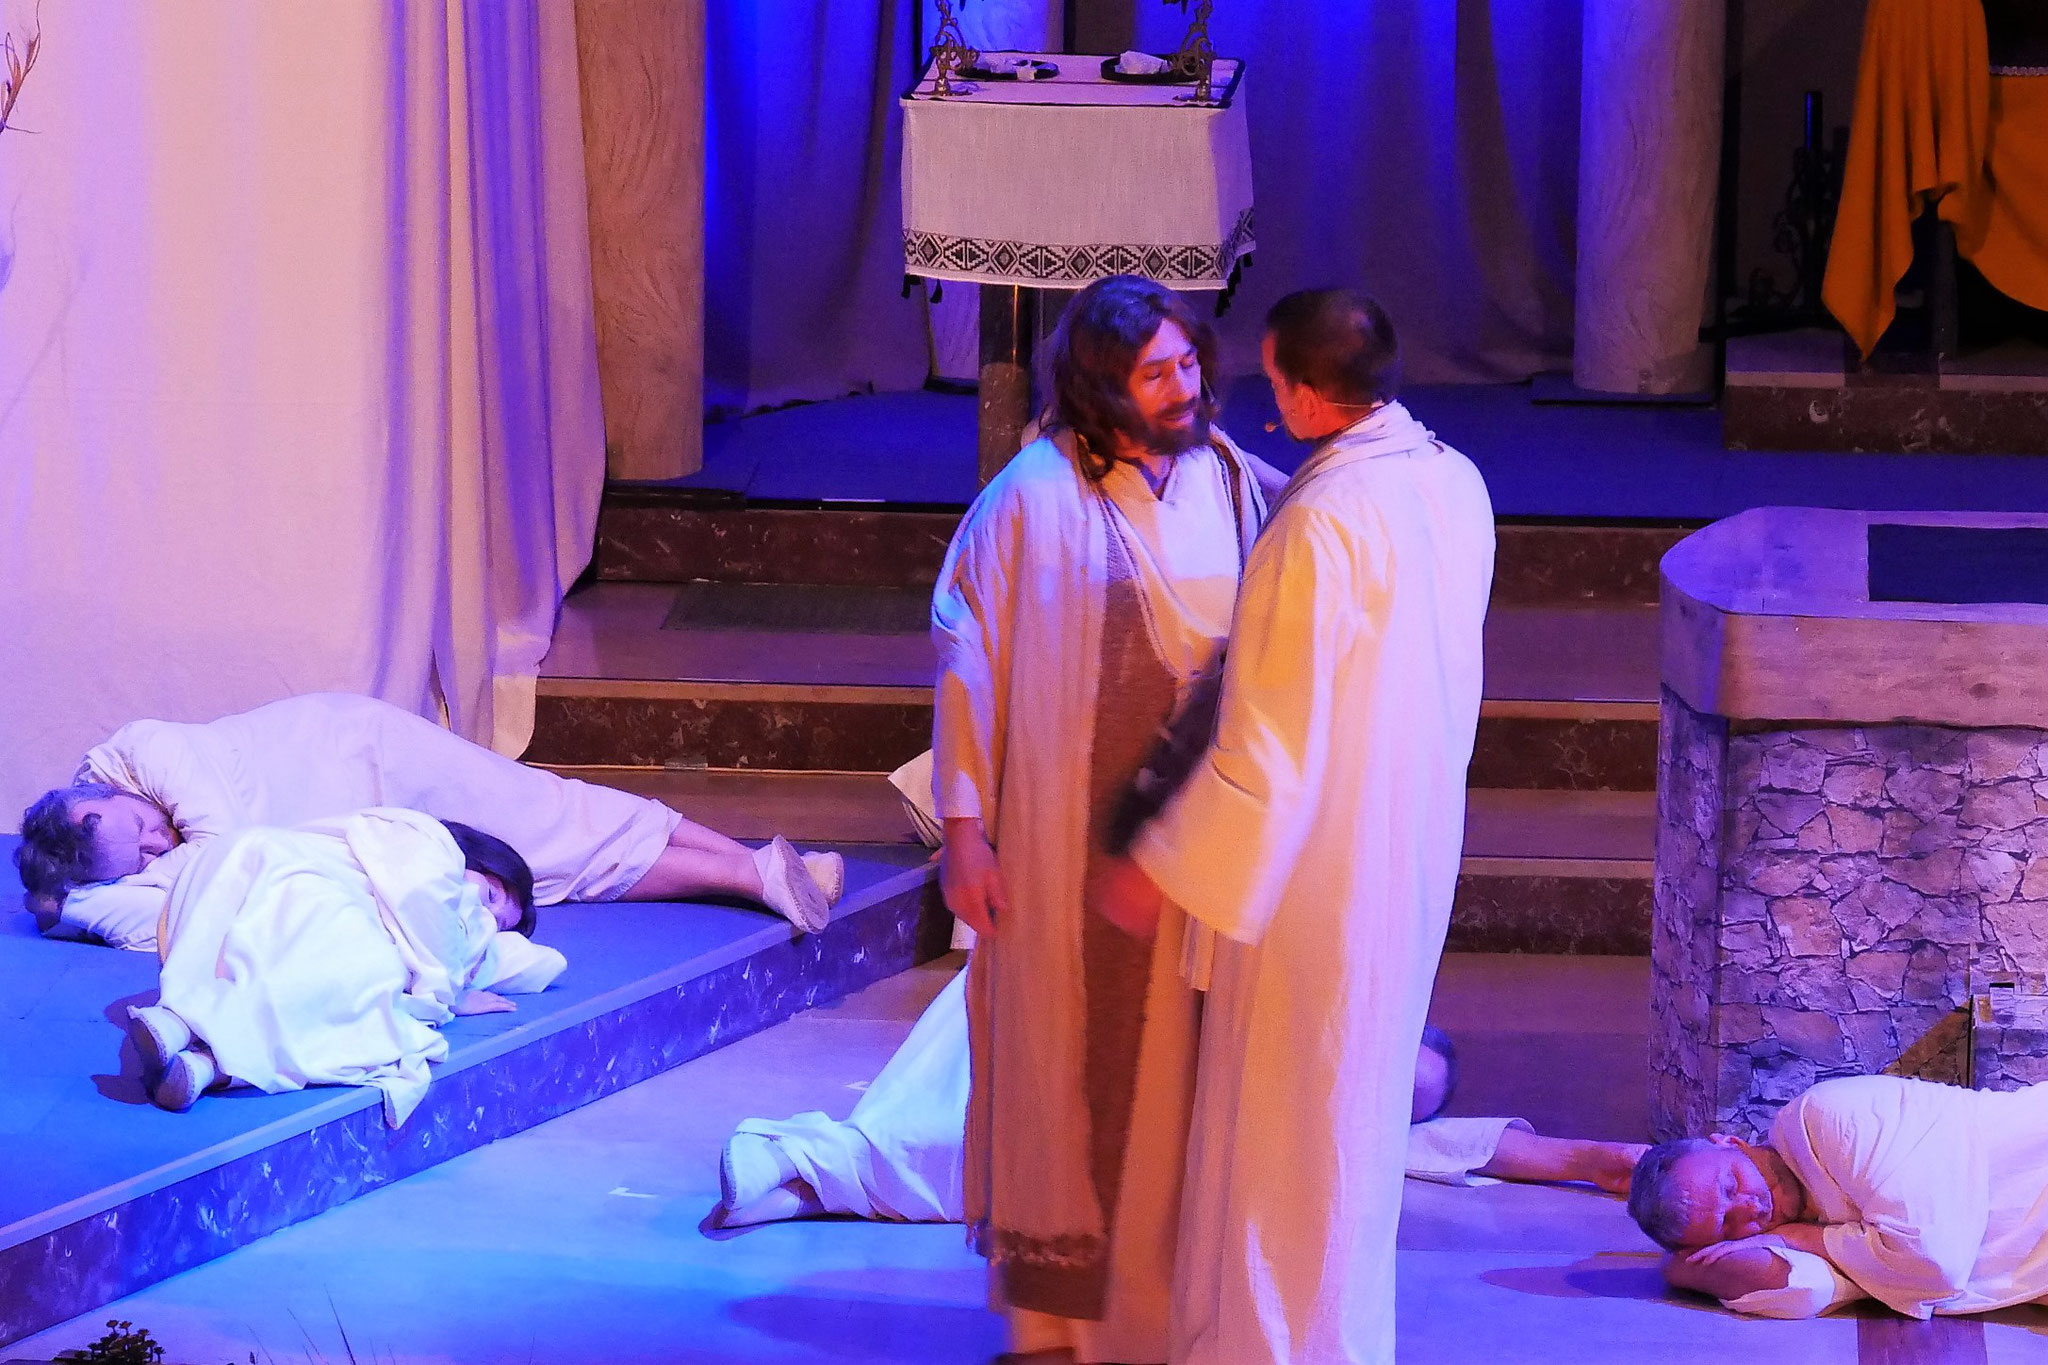 Judas verrät Jesus mit einem Kuss